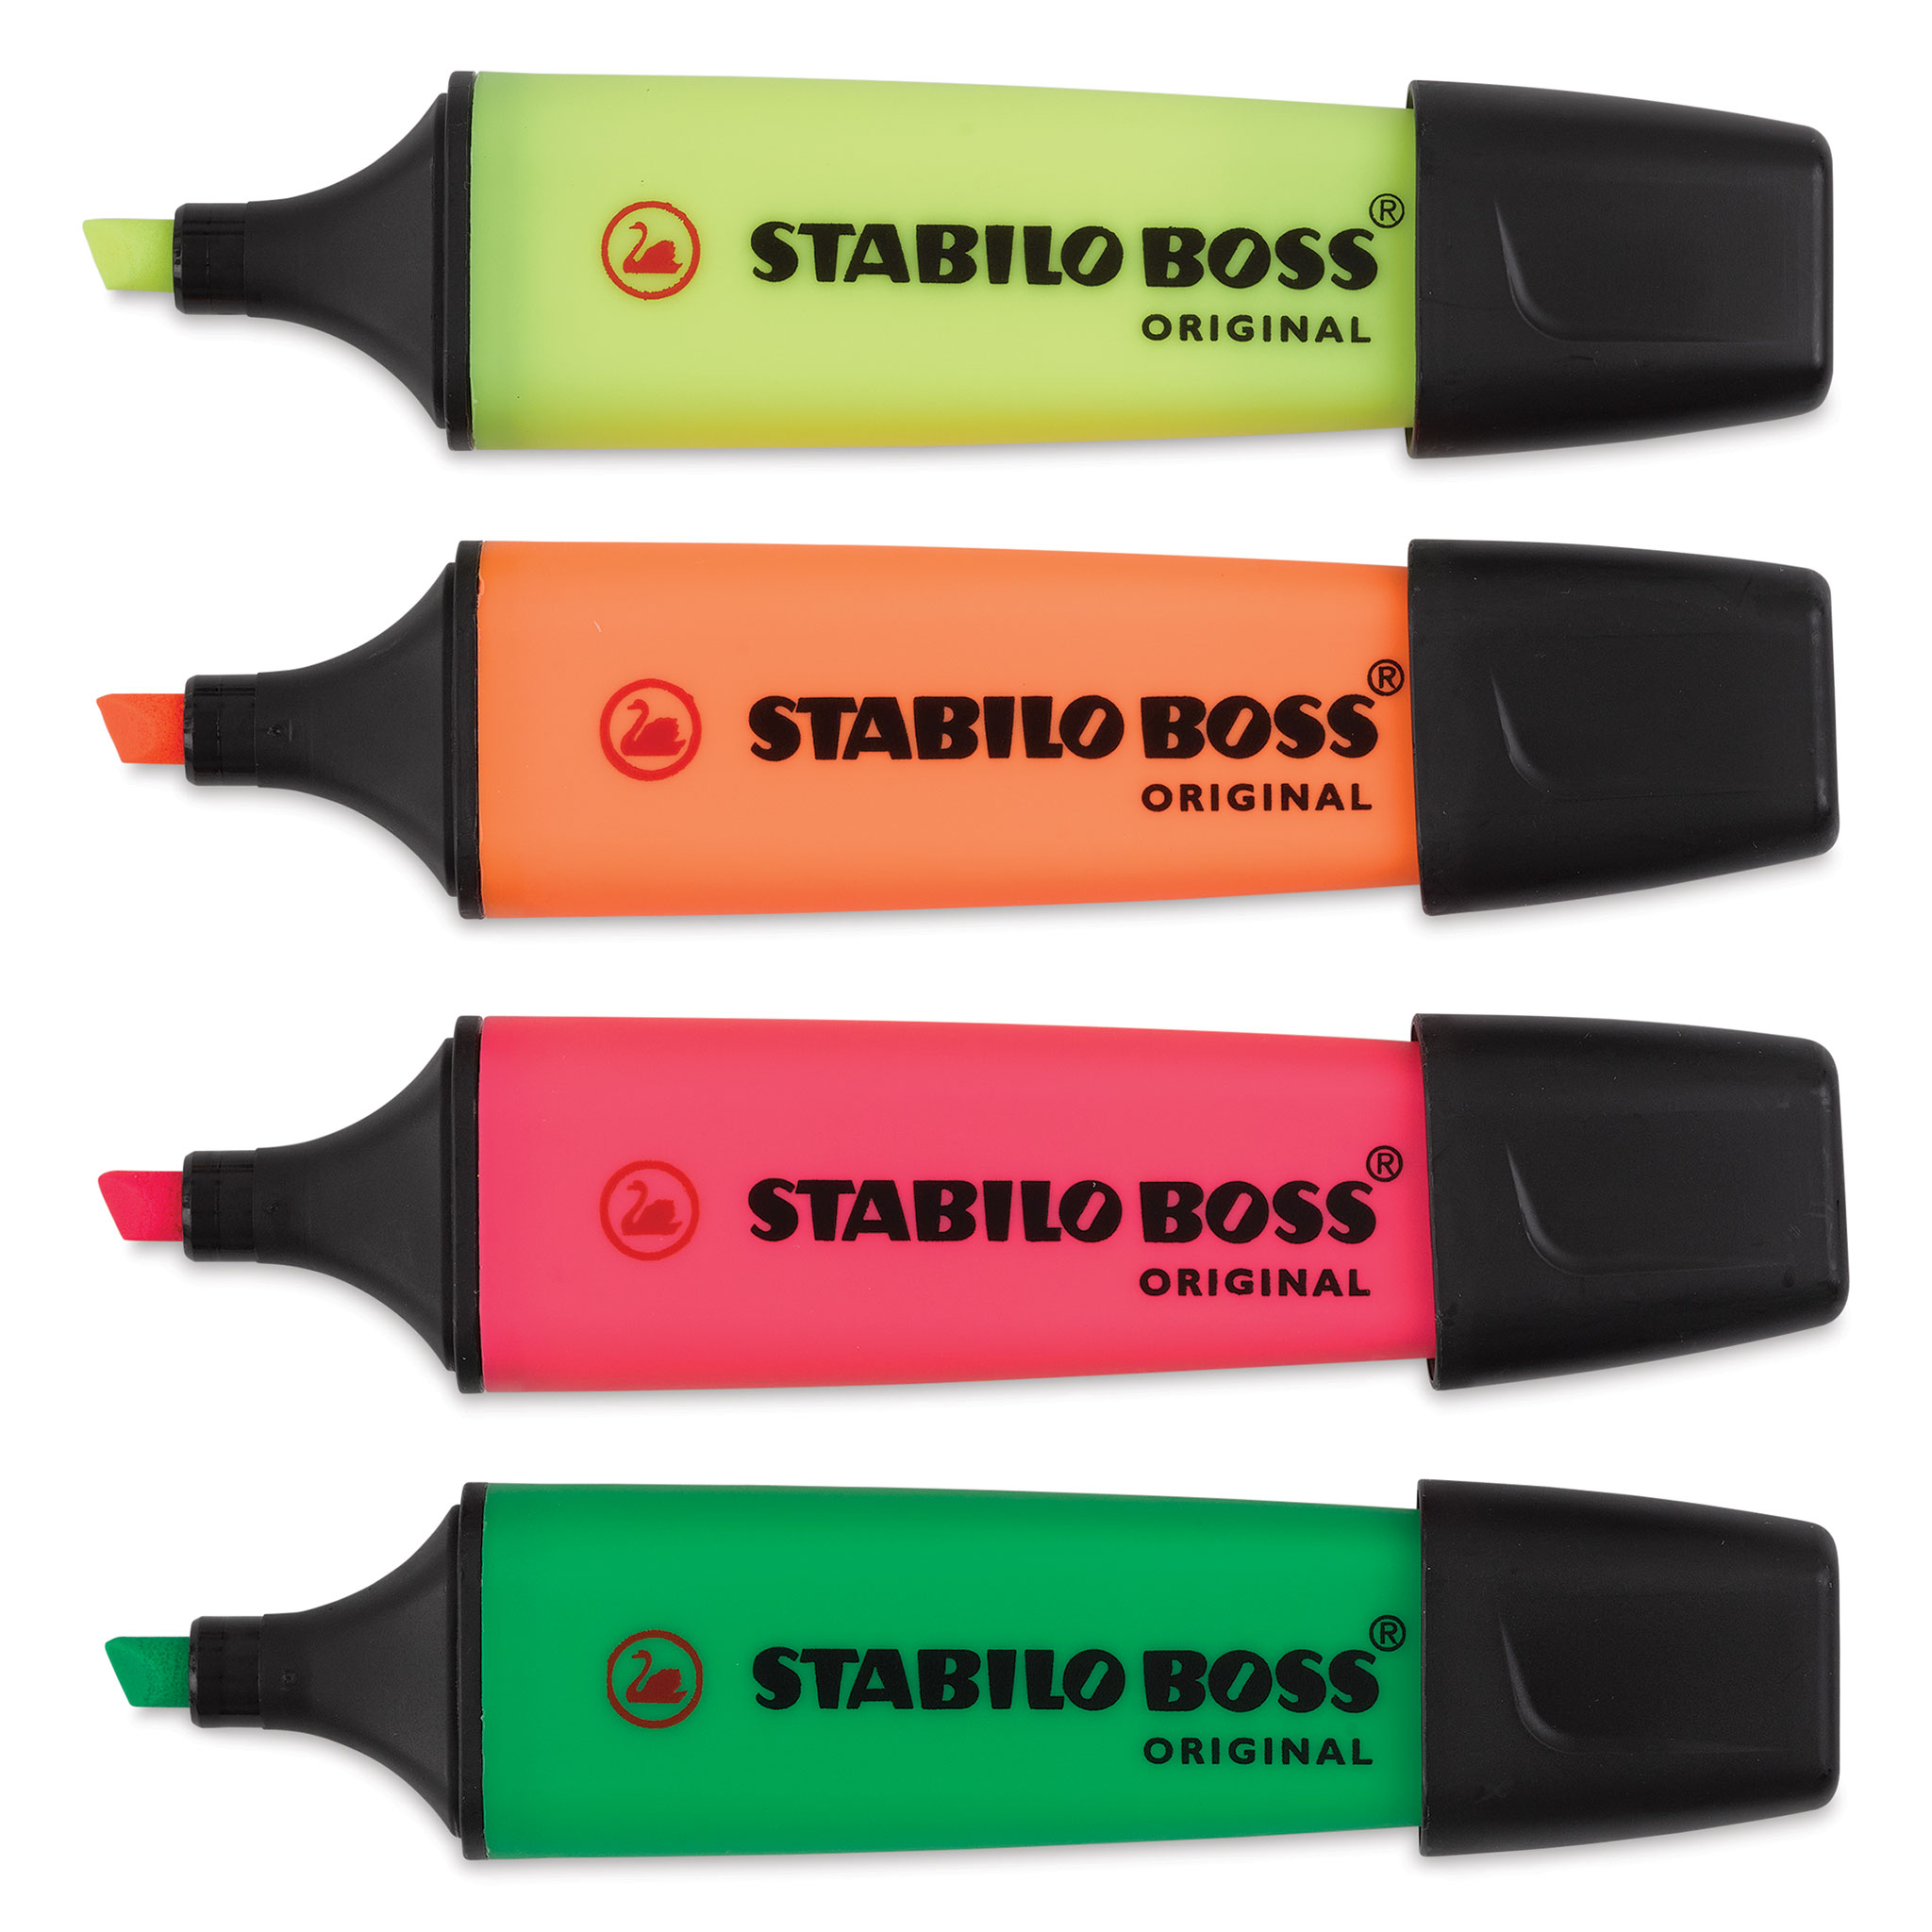 Stabilo Boss Original Highlighter Sets